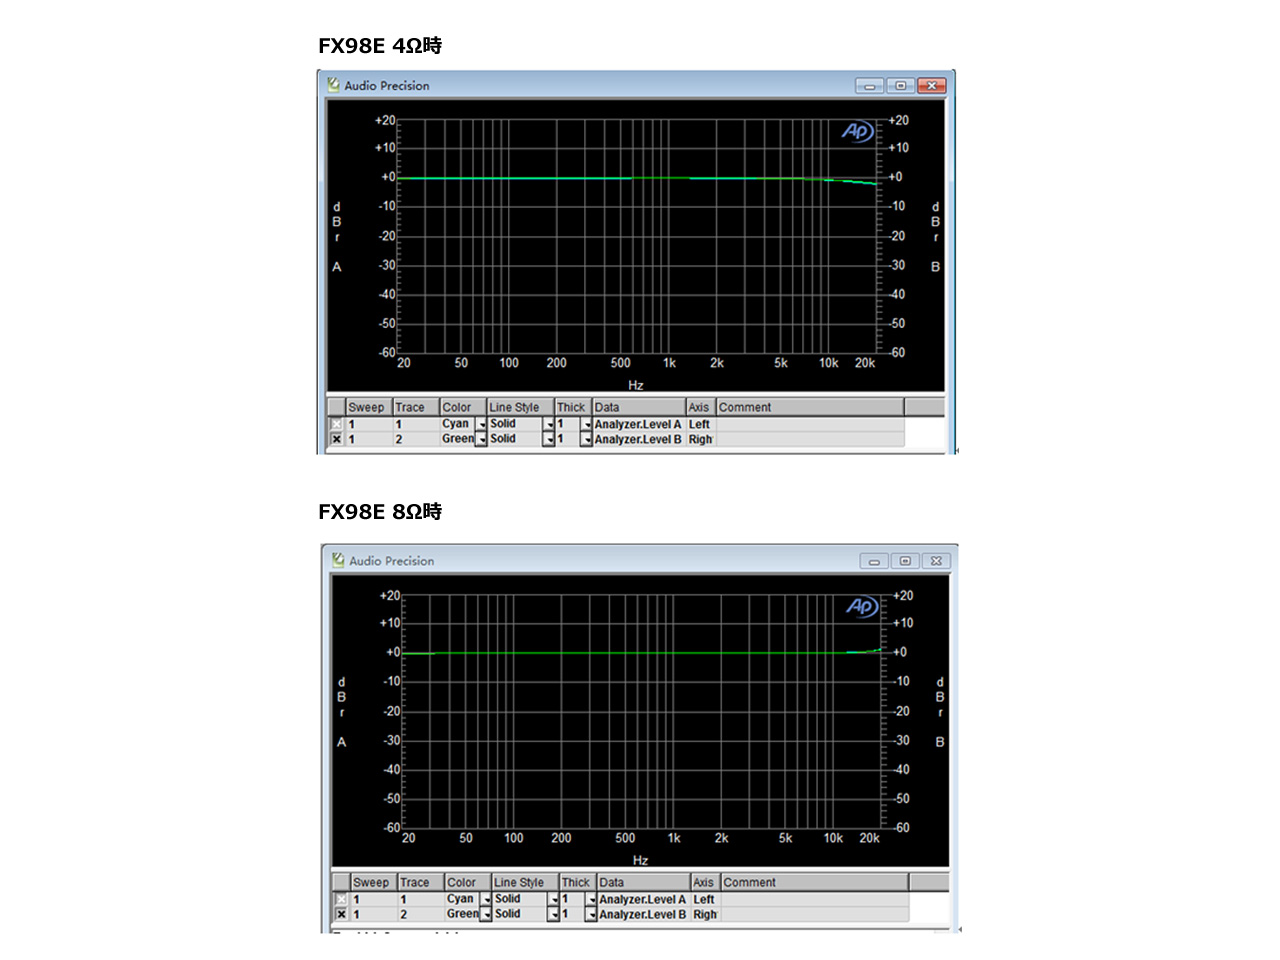 送料無料 FX-AUDIO- FX-98E [ブラック] TDA7498EデジタルアンプIC搭載 160Wハイパワーデジタルアンプ  NFJストア 